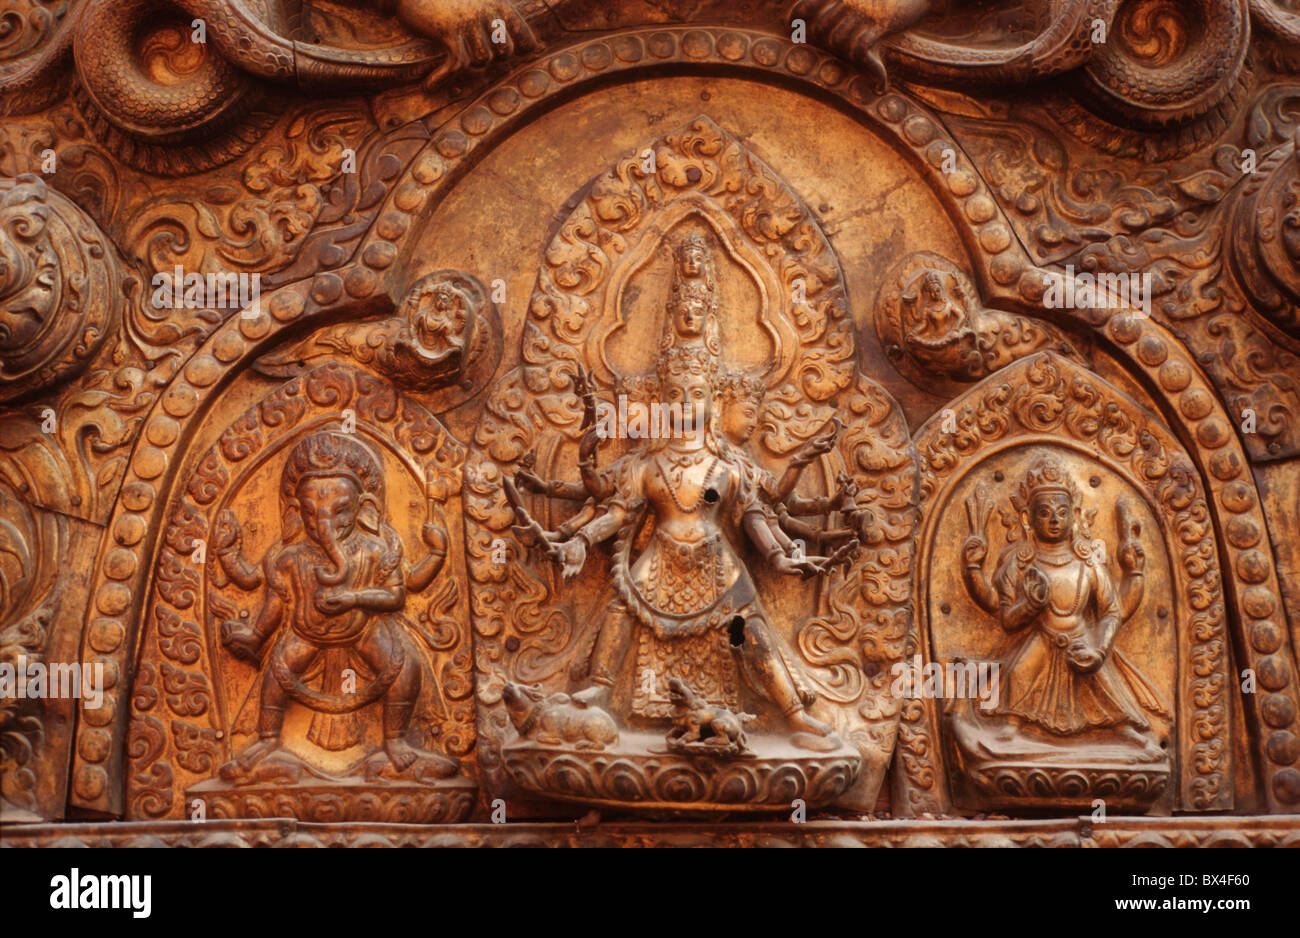 La religión del Hinduismo Golden Gate gate cobre fundición de bronce de obras de arte artesanía el trabajo manual metal works Tympanon 1 Foto de stock